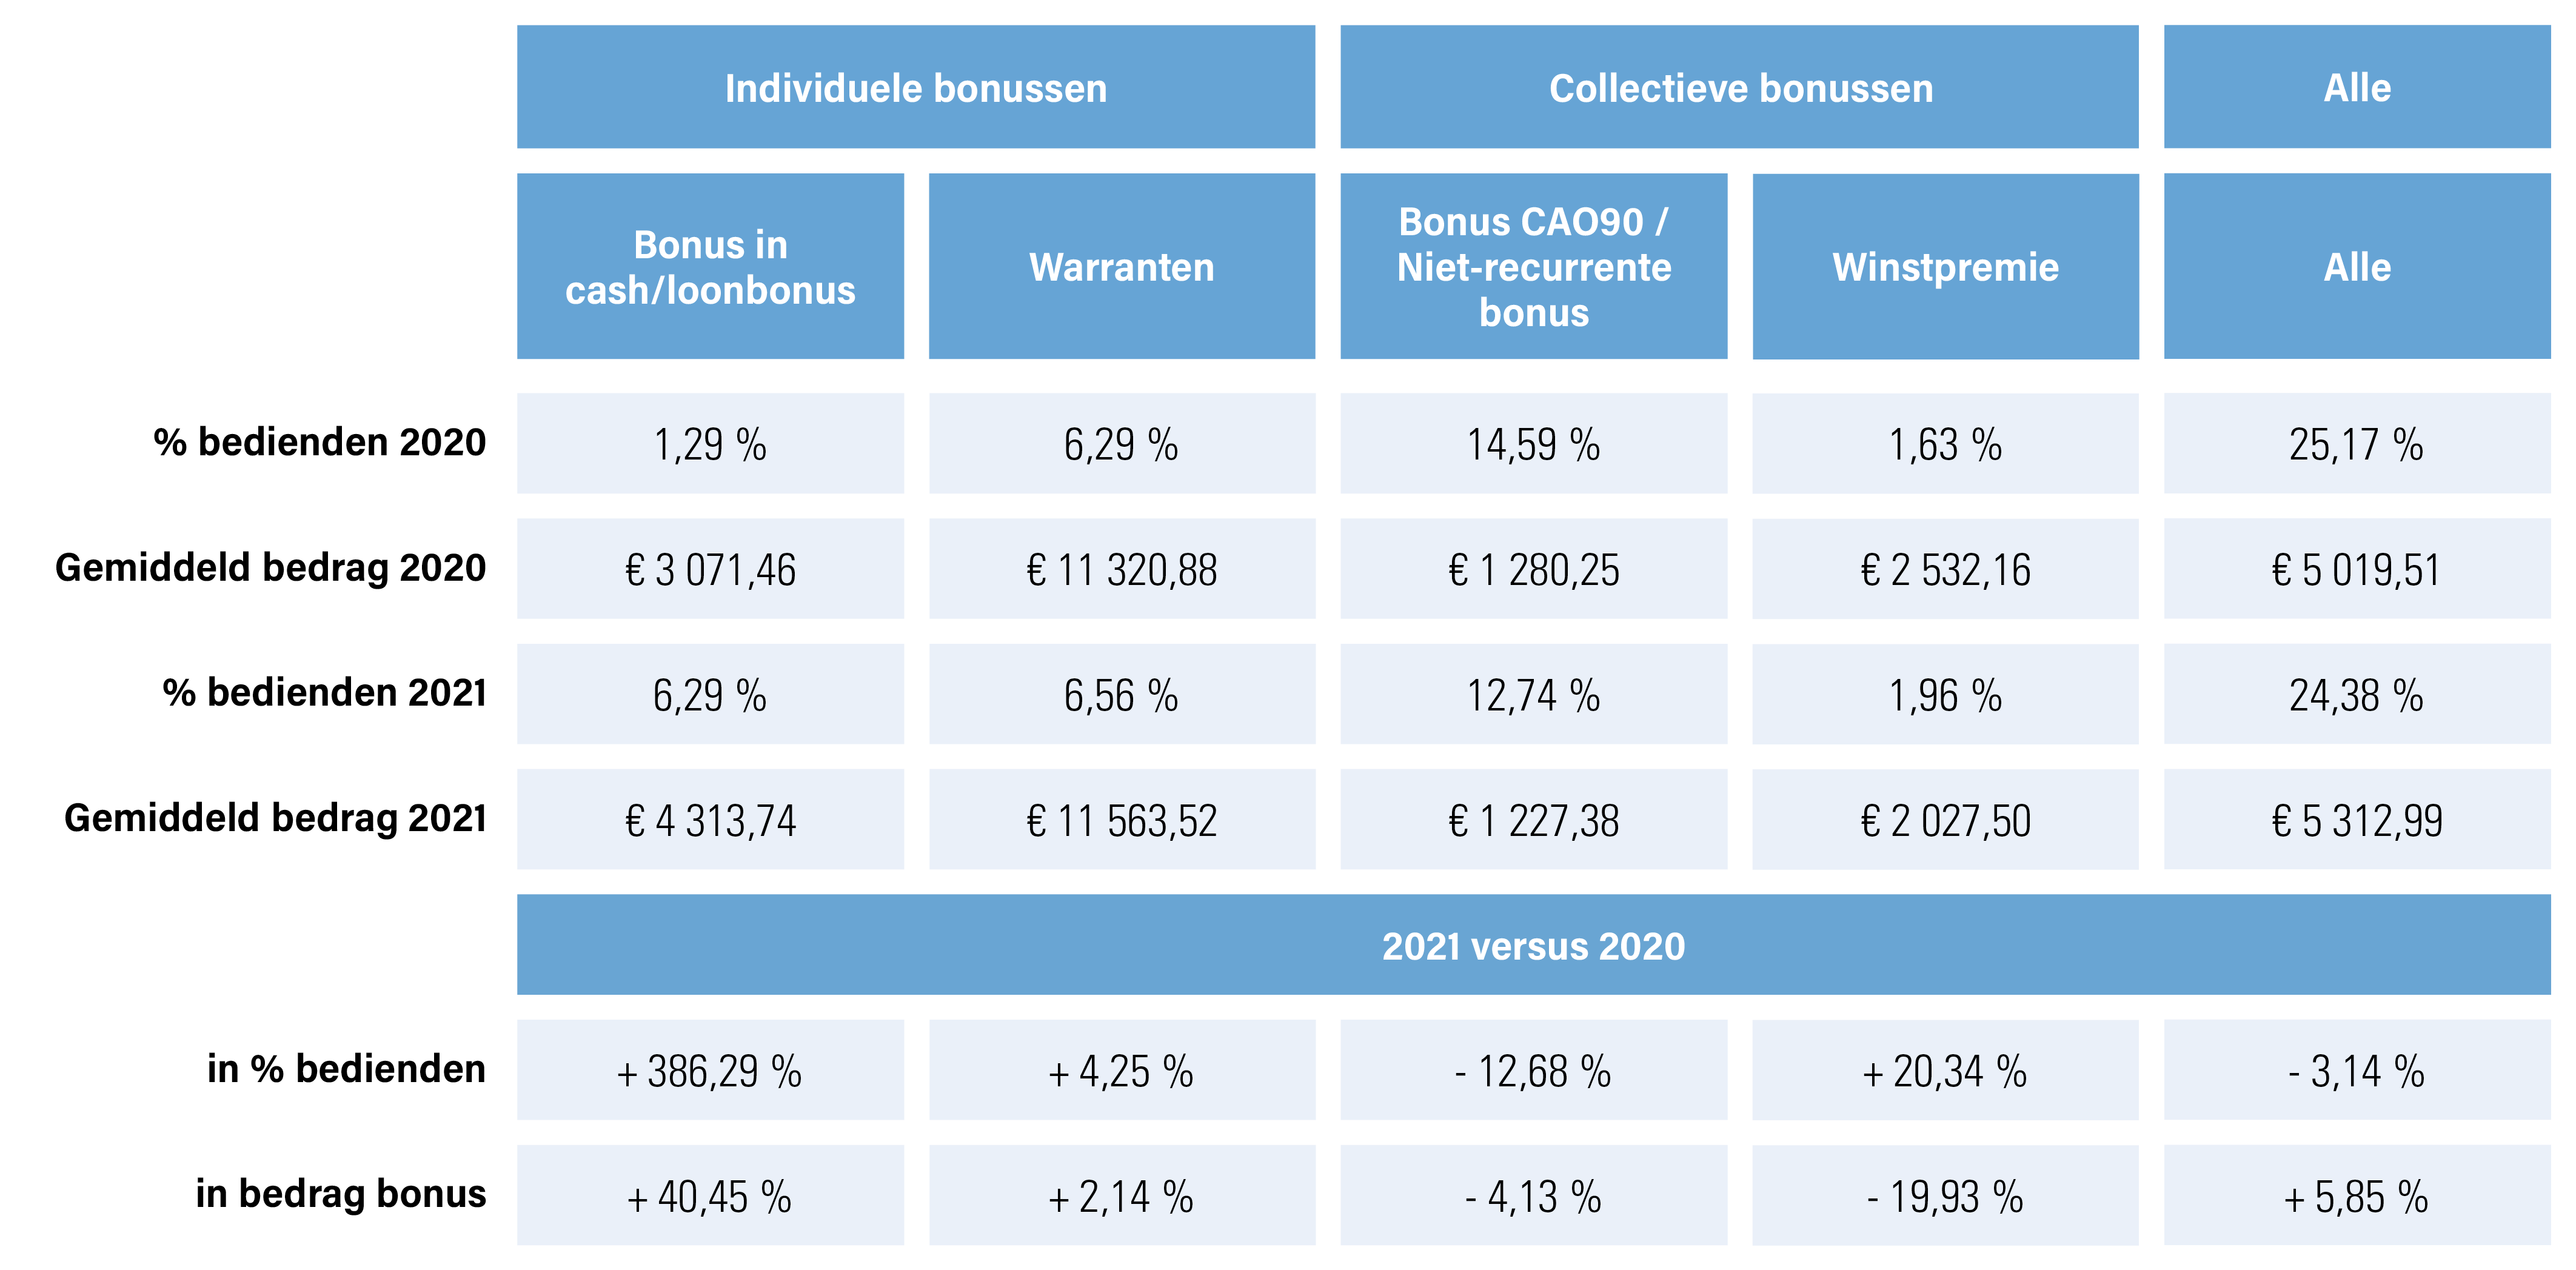 Overzicht bonussen bedienden profit in  % en bedragen, 2021 en 2020 en de vergelijking